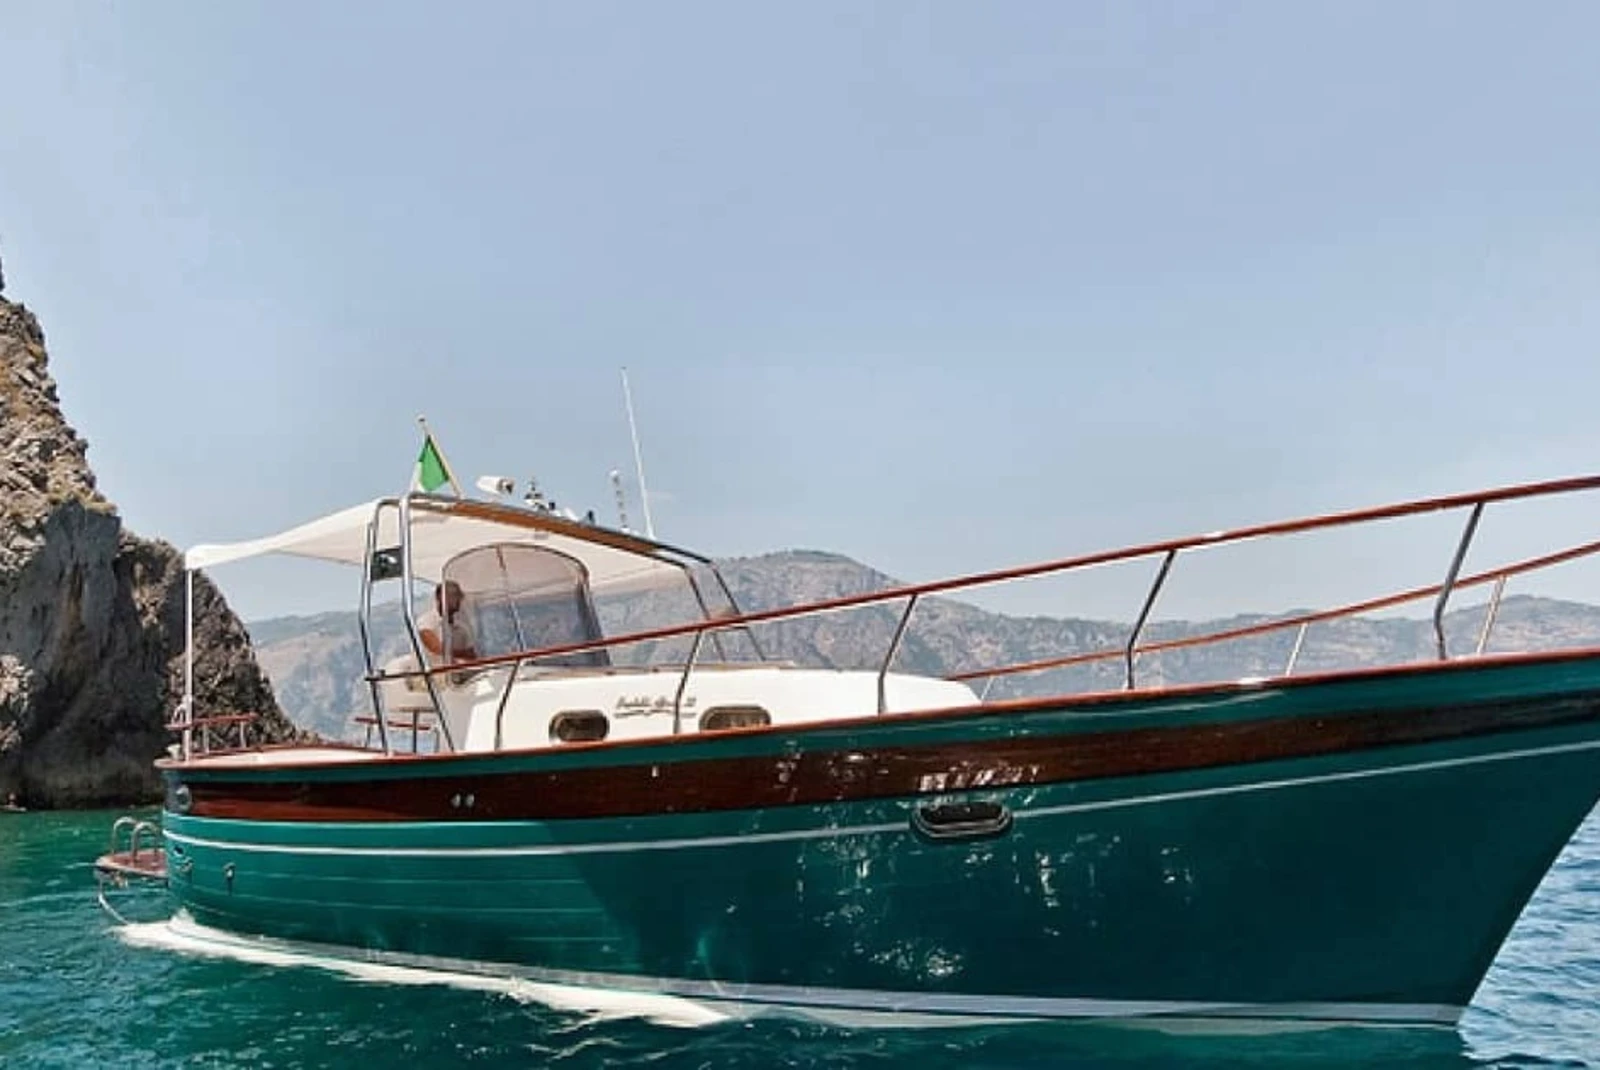 Explore the coasts of the island aboard a private Italian gozzo boat.